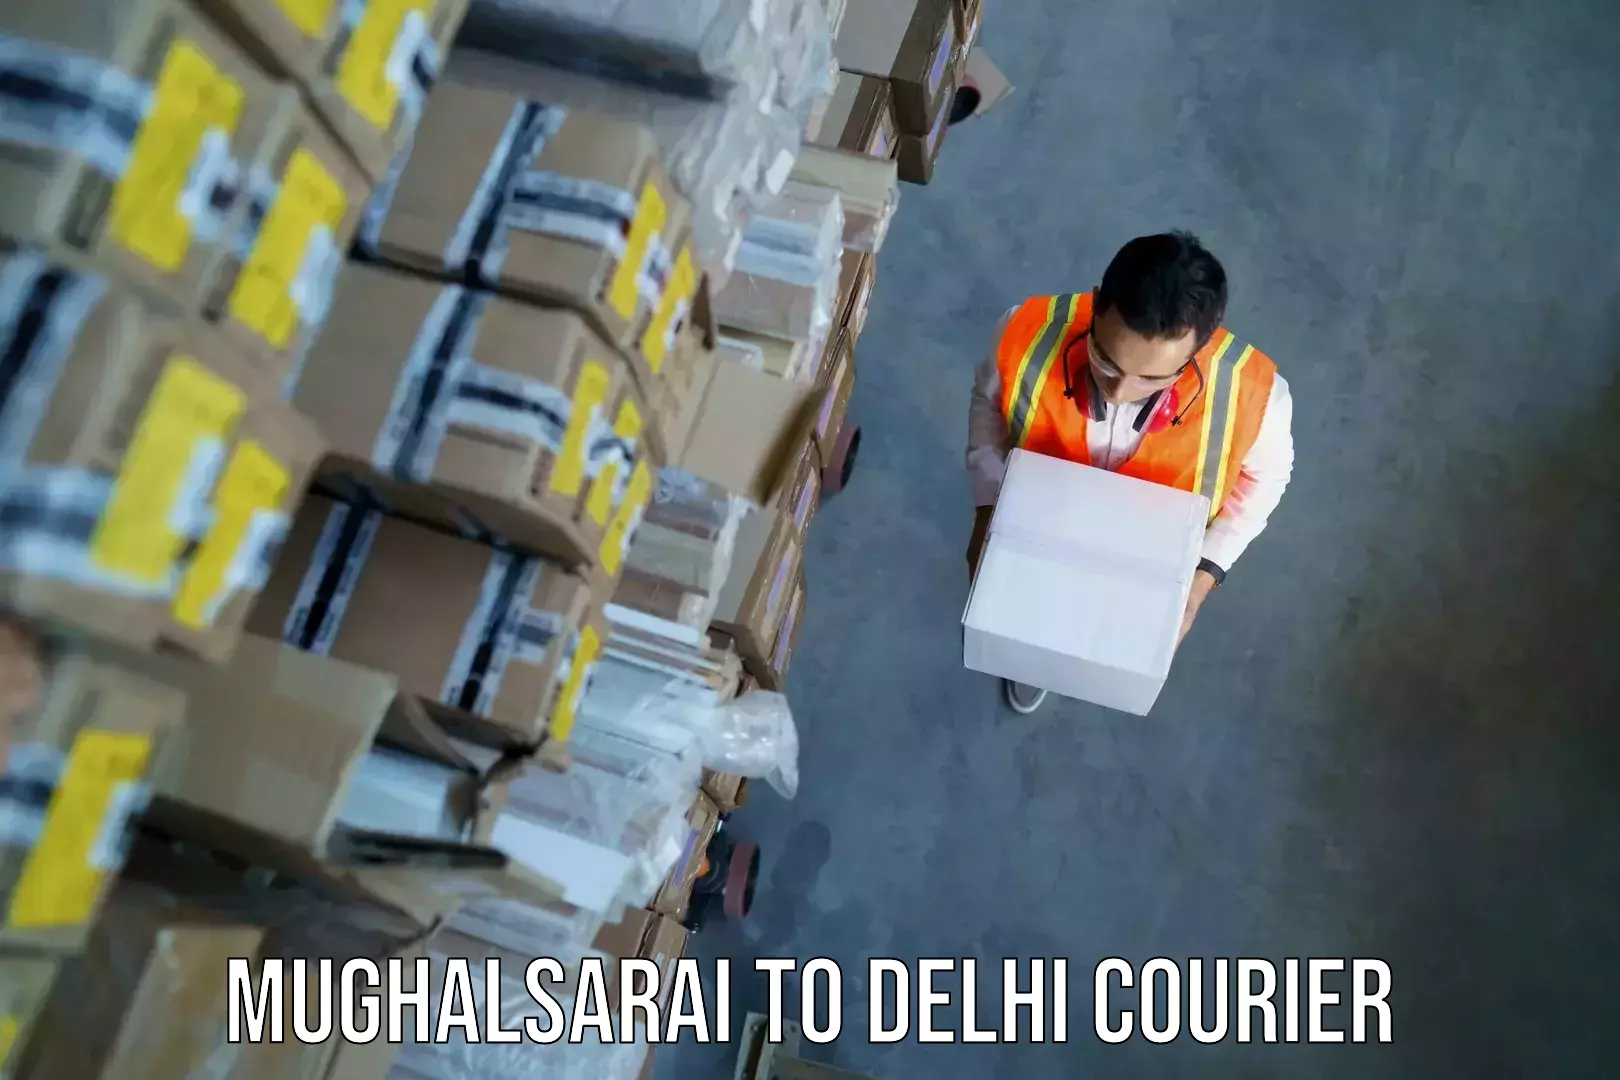 Baggage shipping service in Mughalsarai to Kalkaji